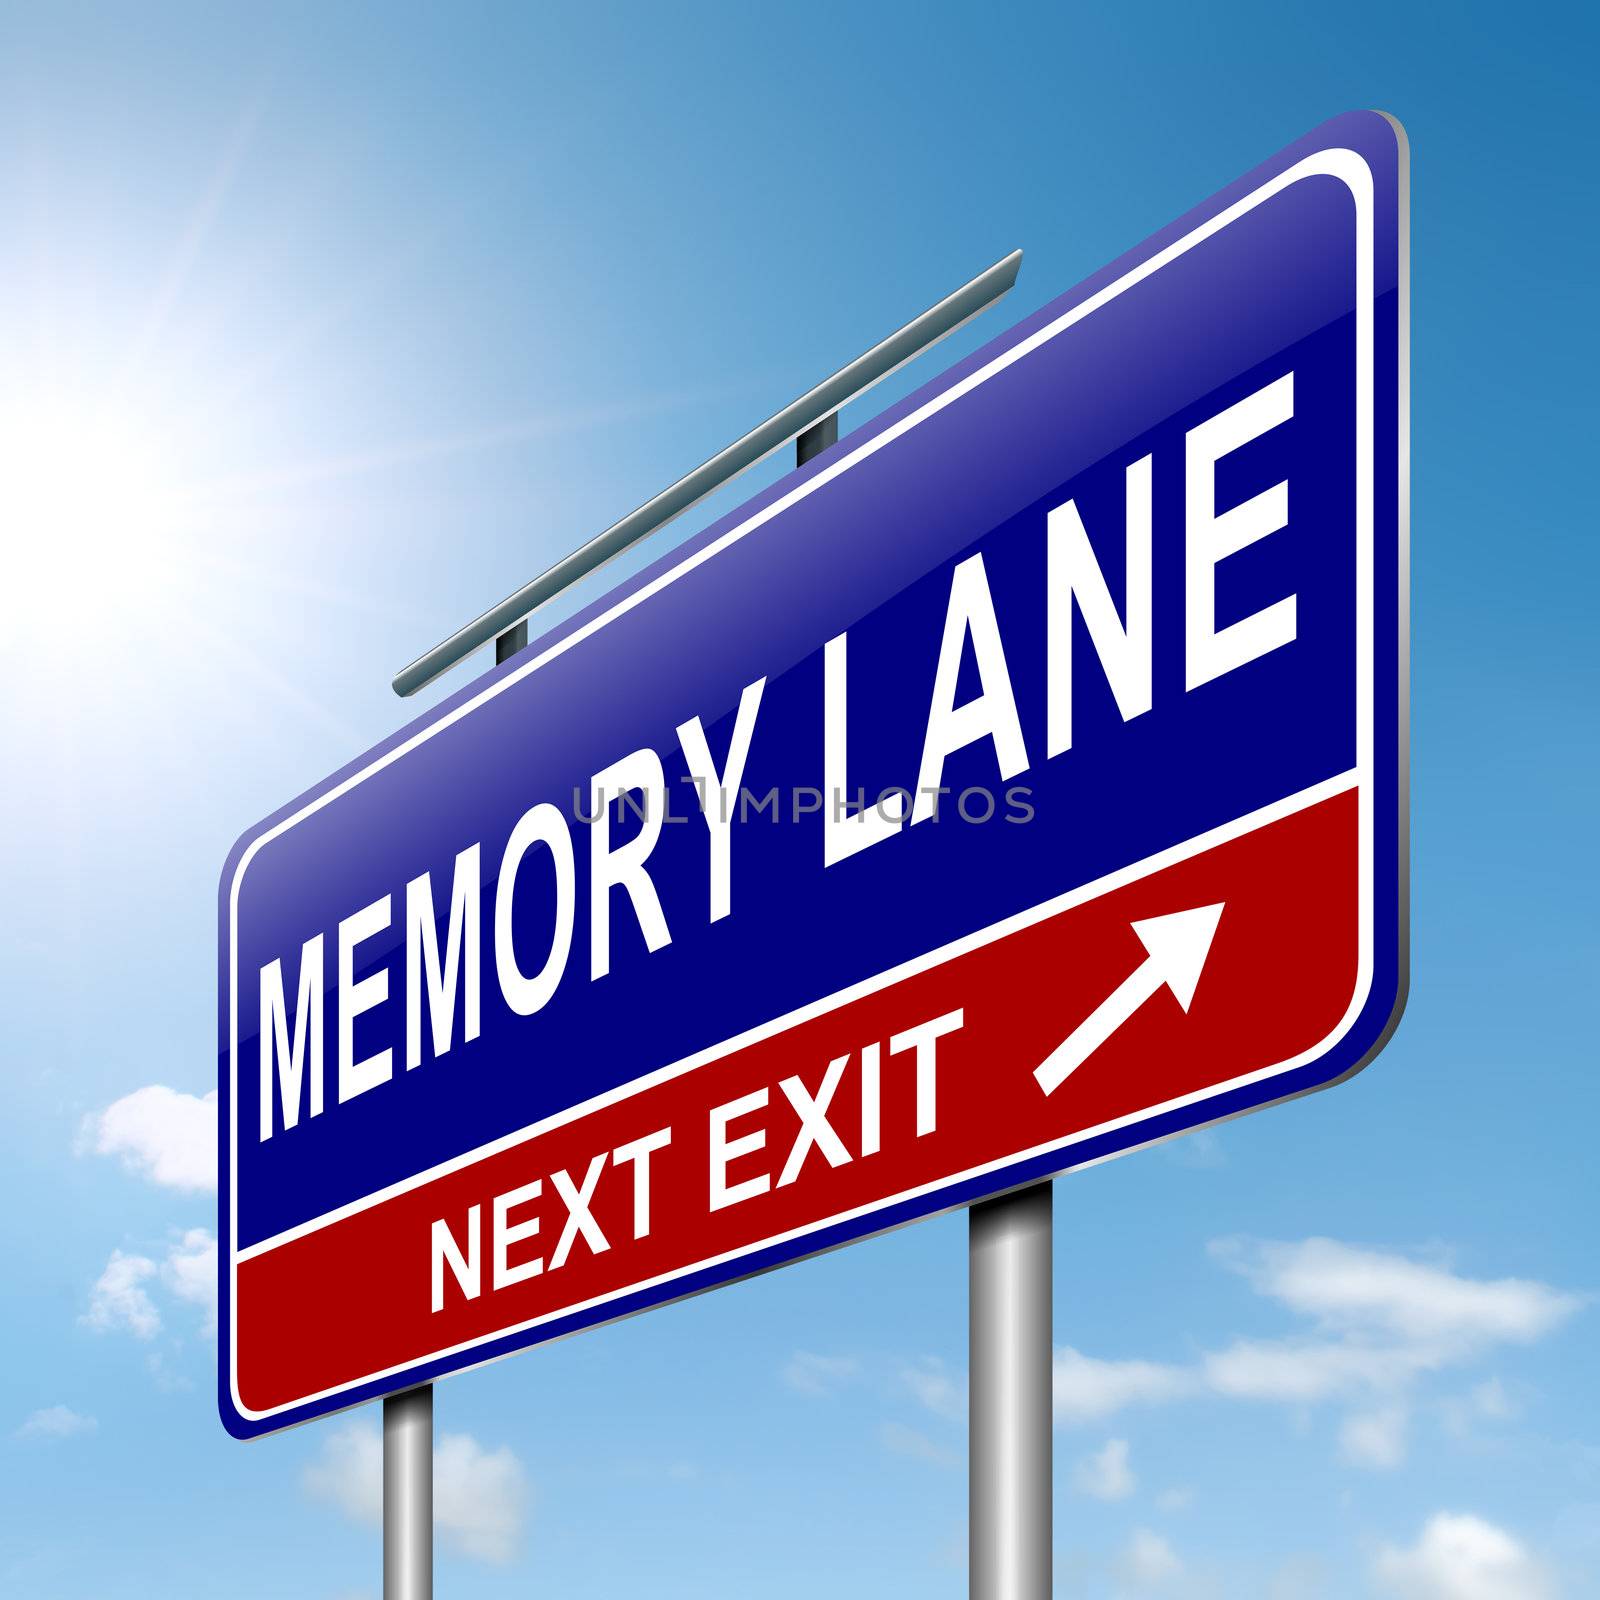 Memory lane concept. by 72soul